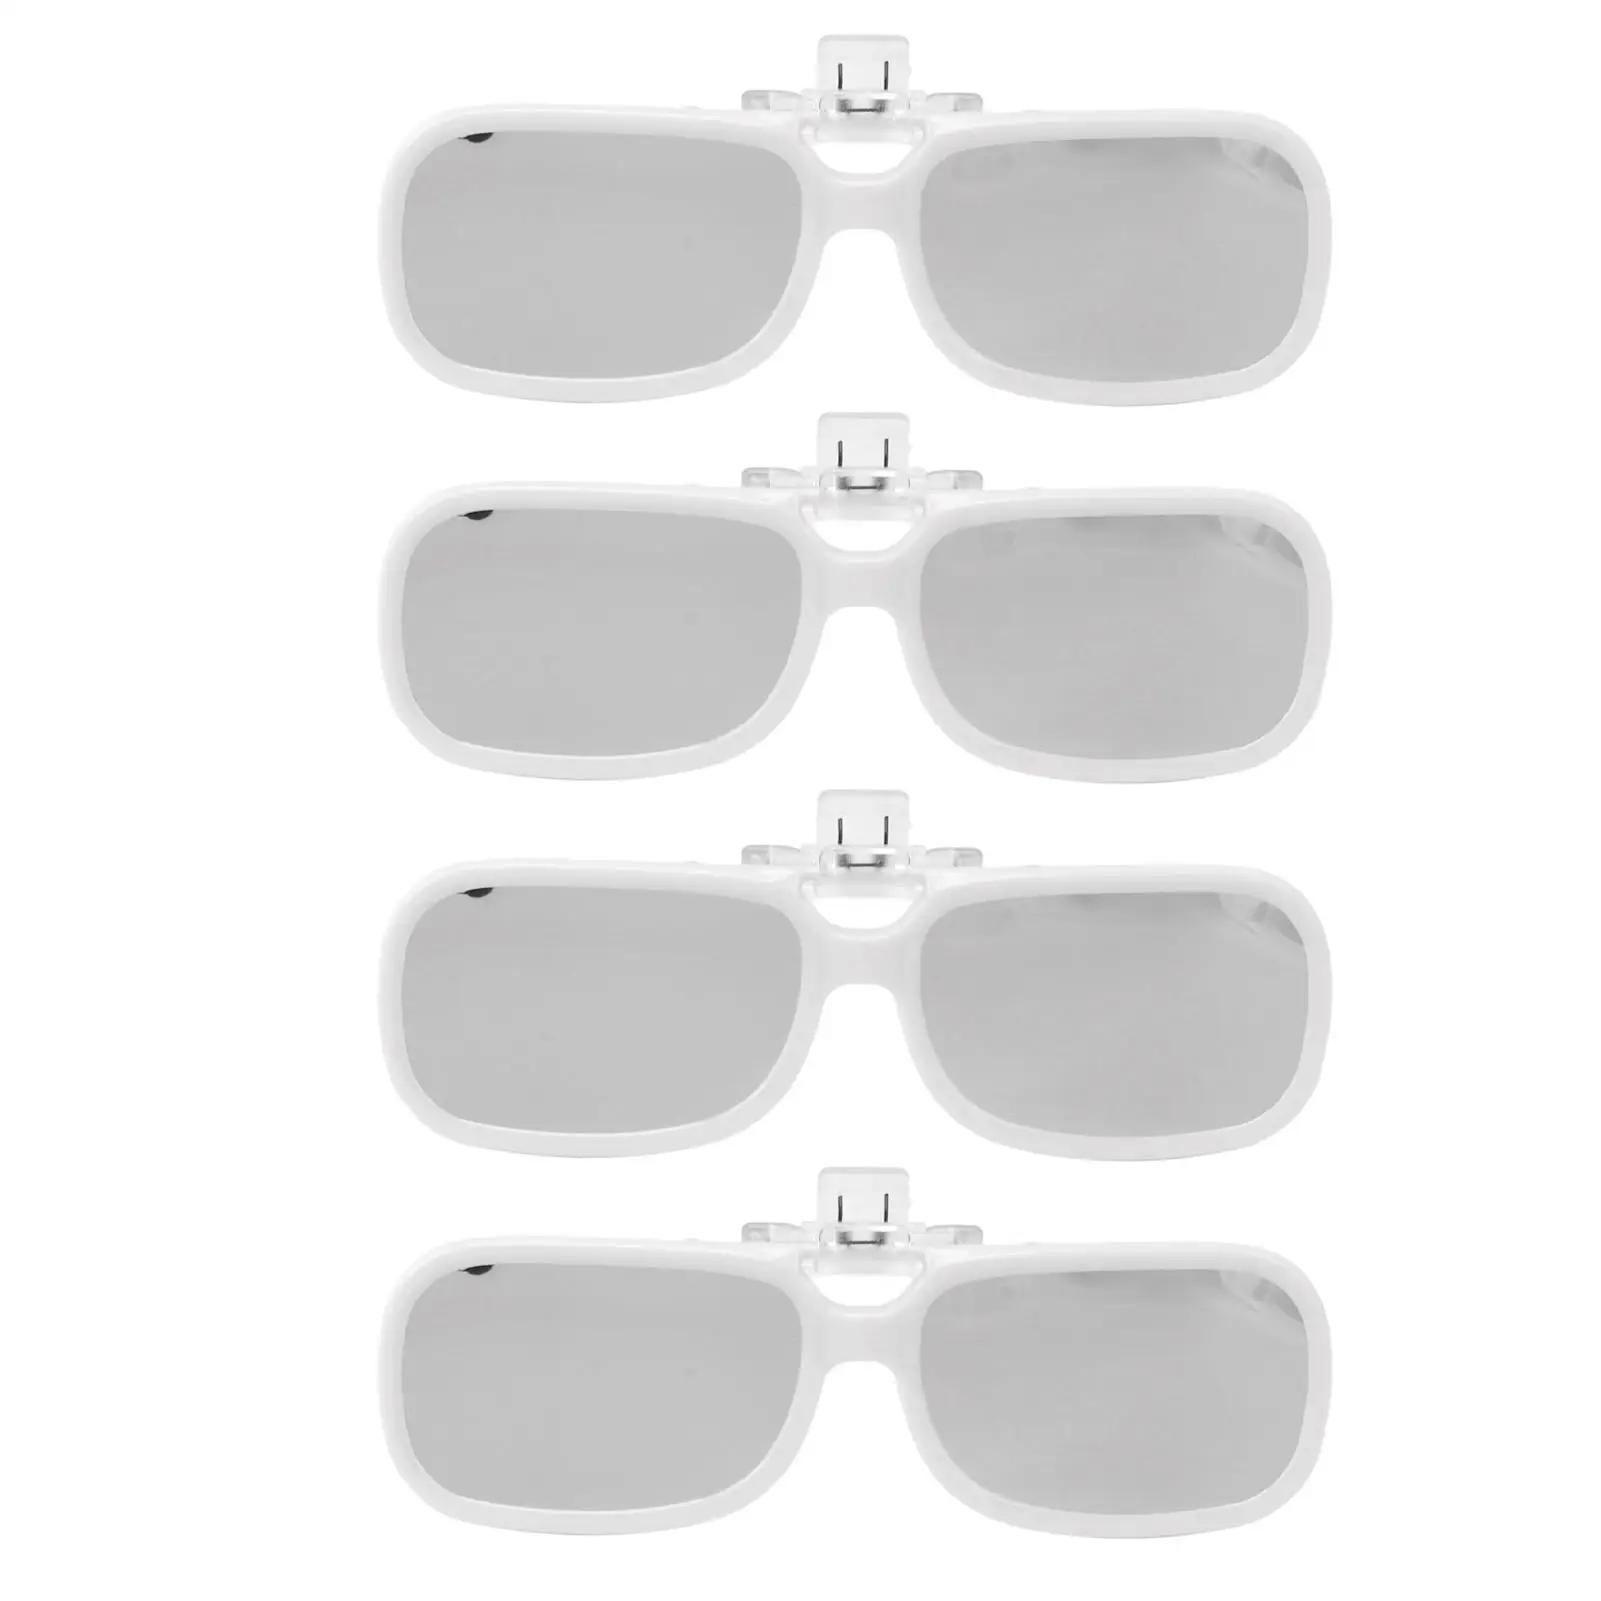 4 플라스틱 클립온 일식 안경, 안전한 직사 태양 감상용